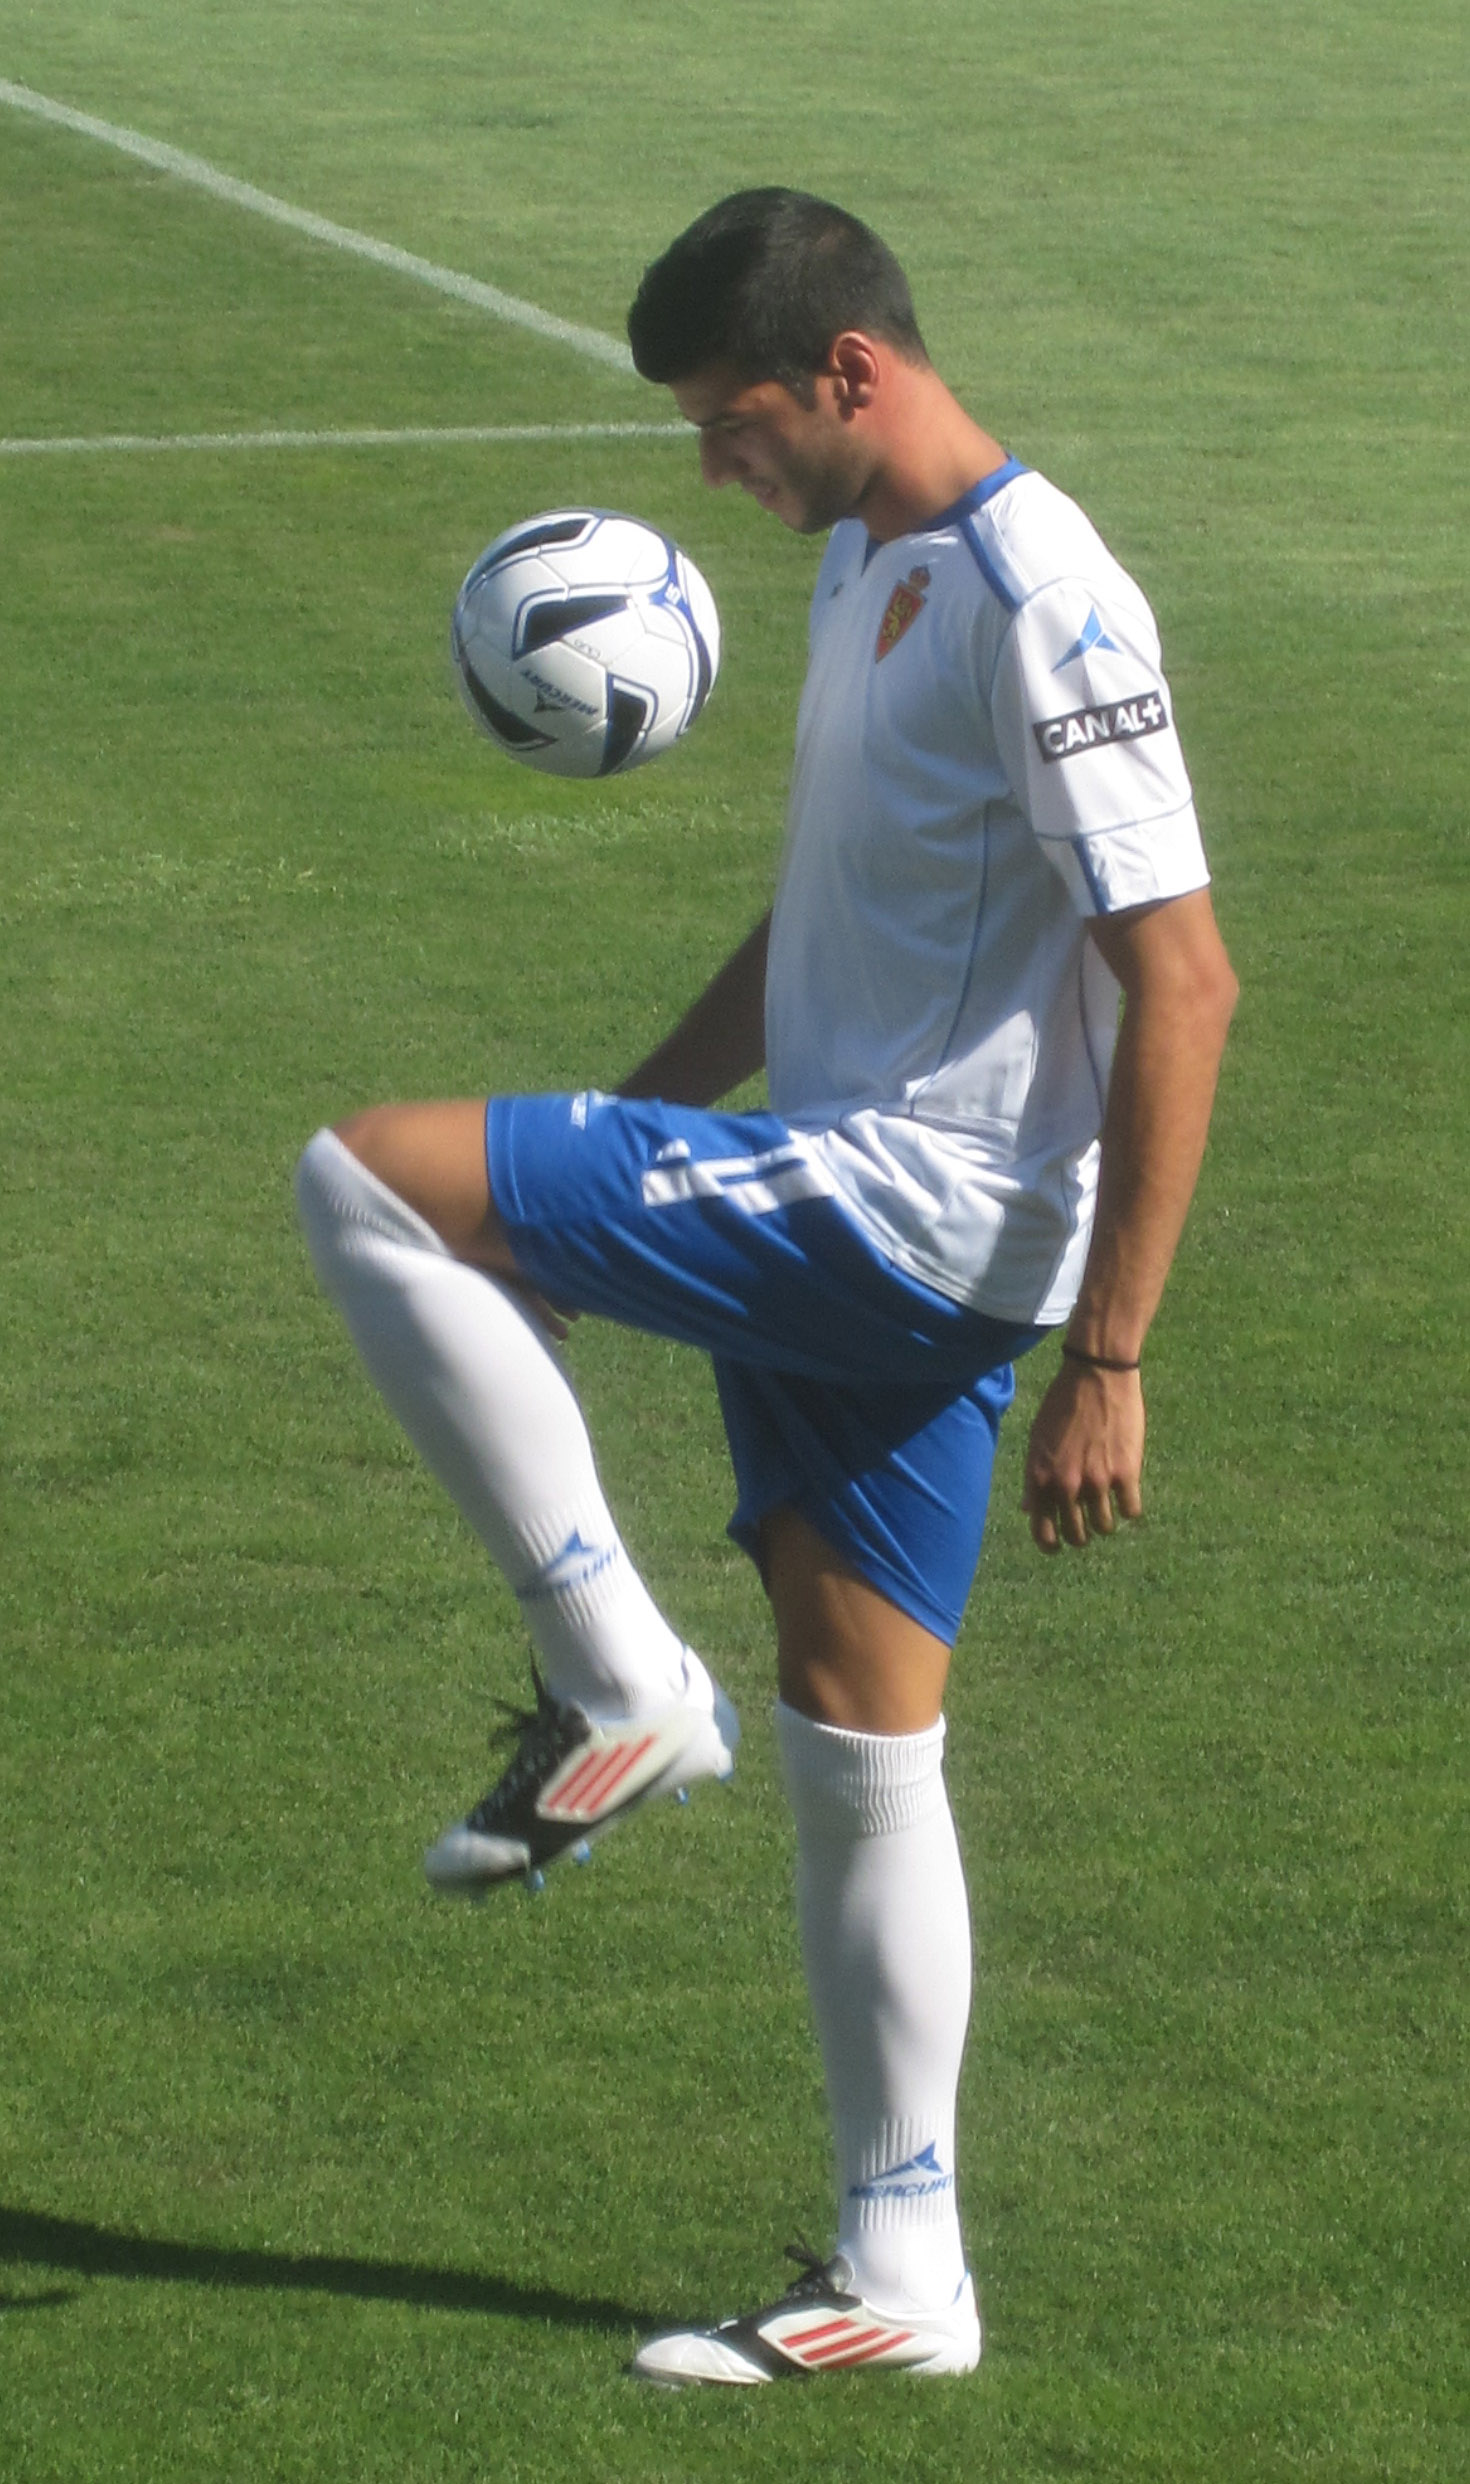 Spanish footballer